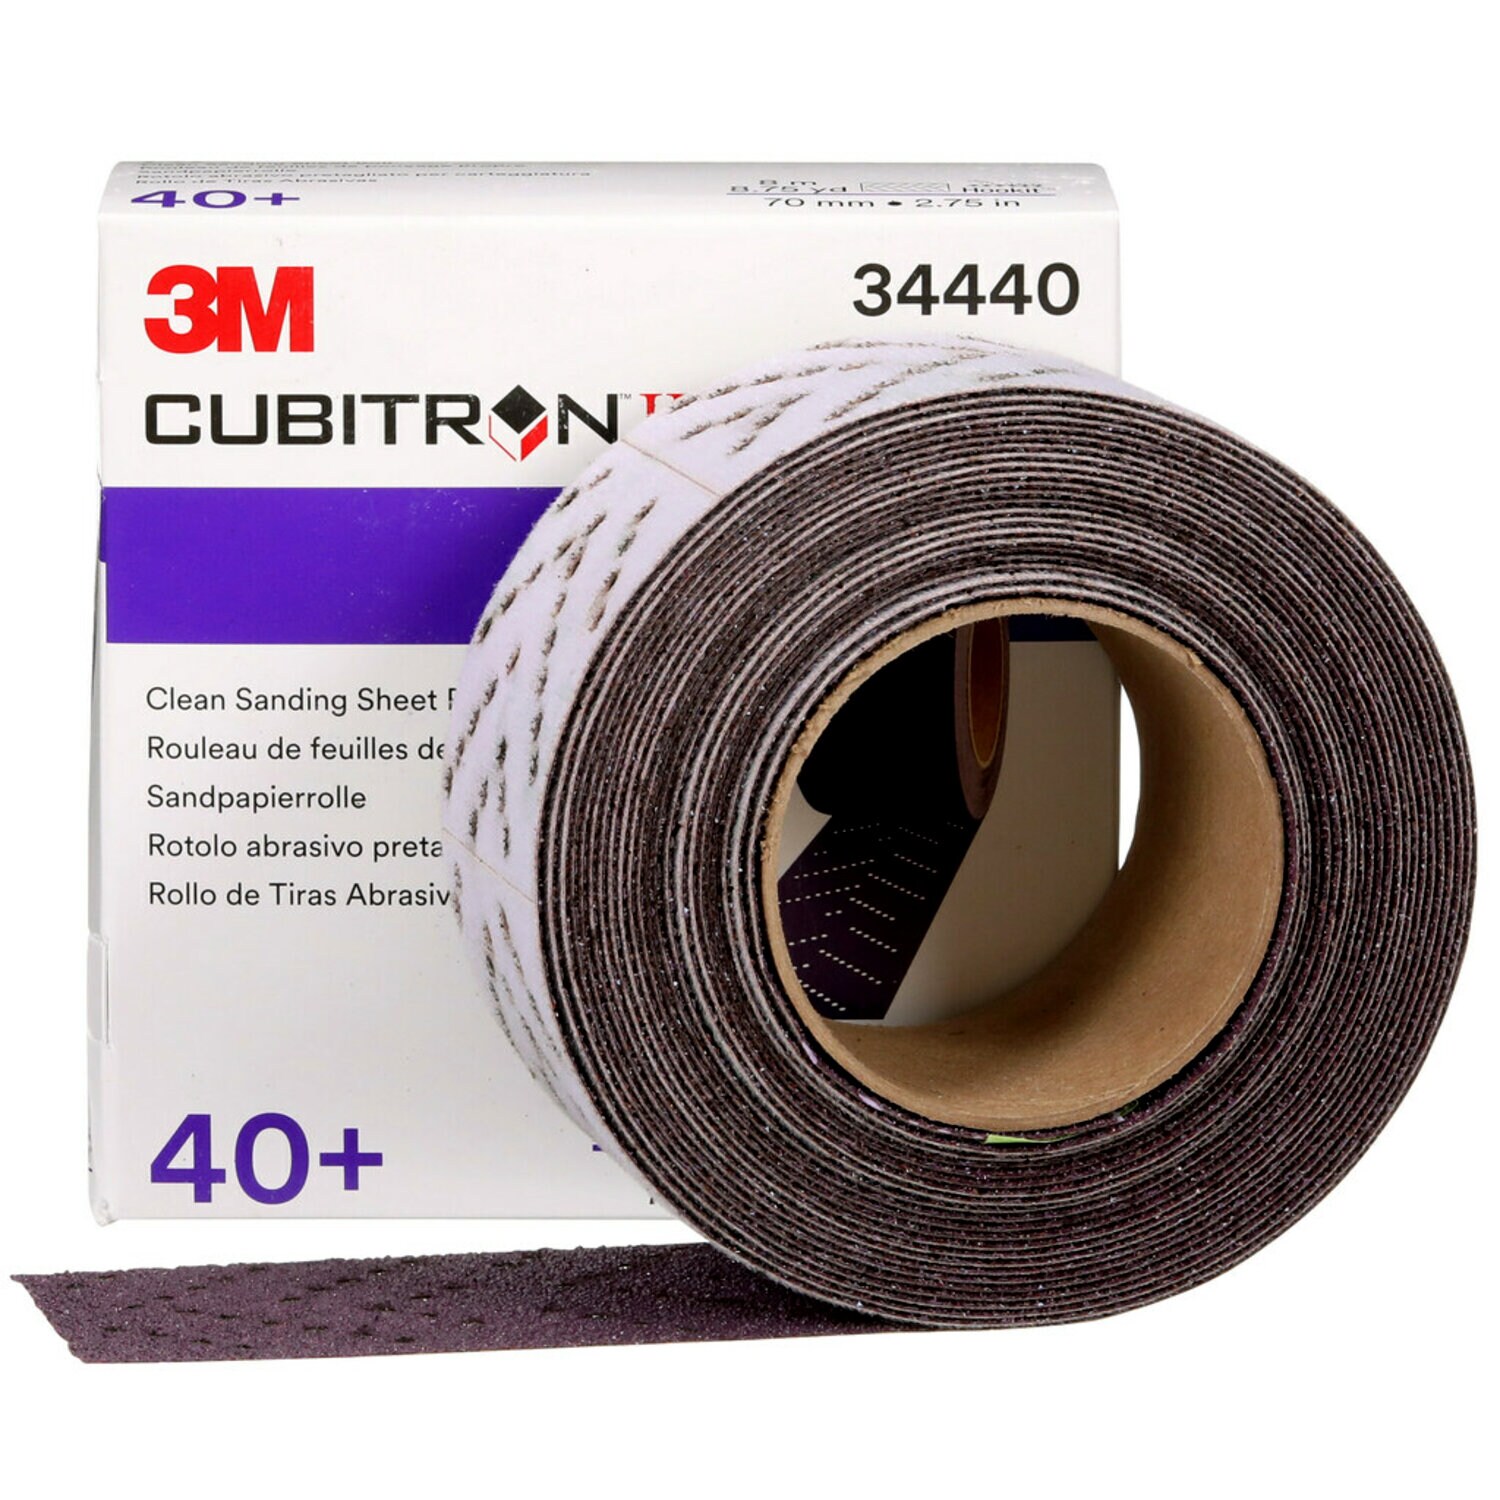 7100086671 - 3M Cubitron II Hookit Clean Sanding Sheet Roll, 34440, 40+ grade, 70
mm x 8 m, 5 rolls per case